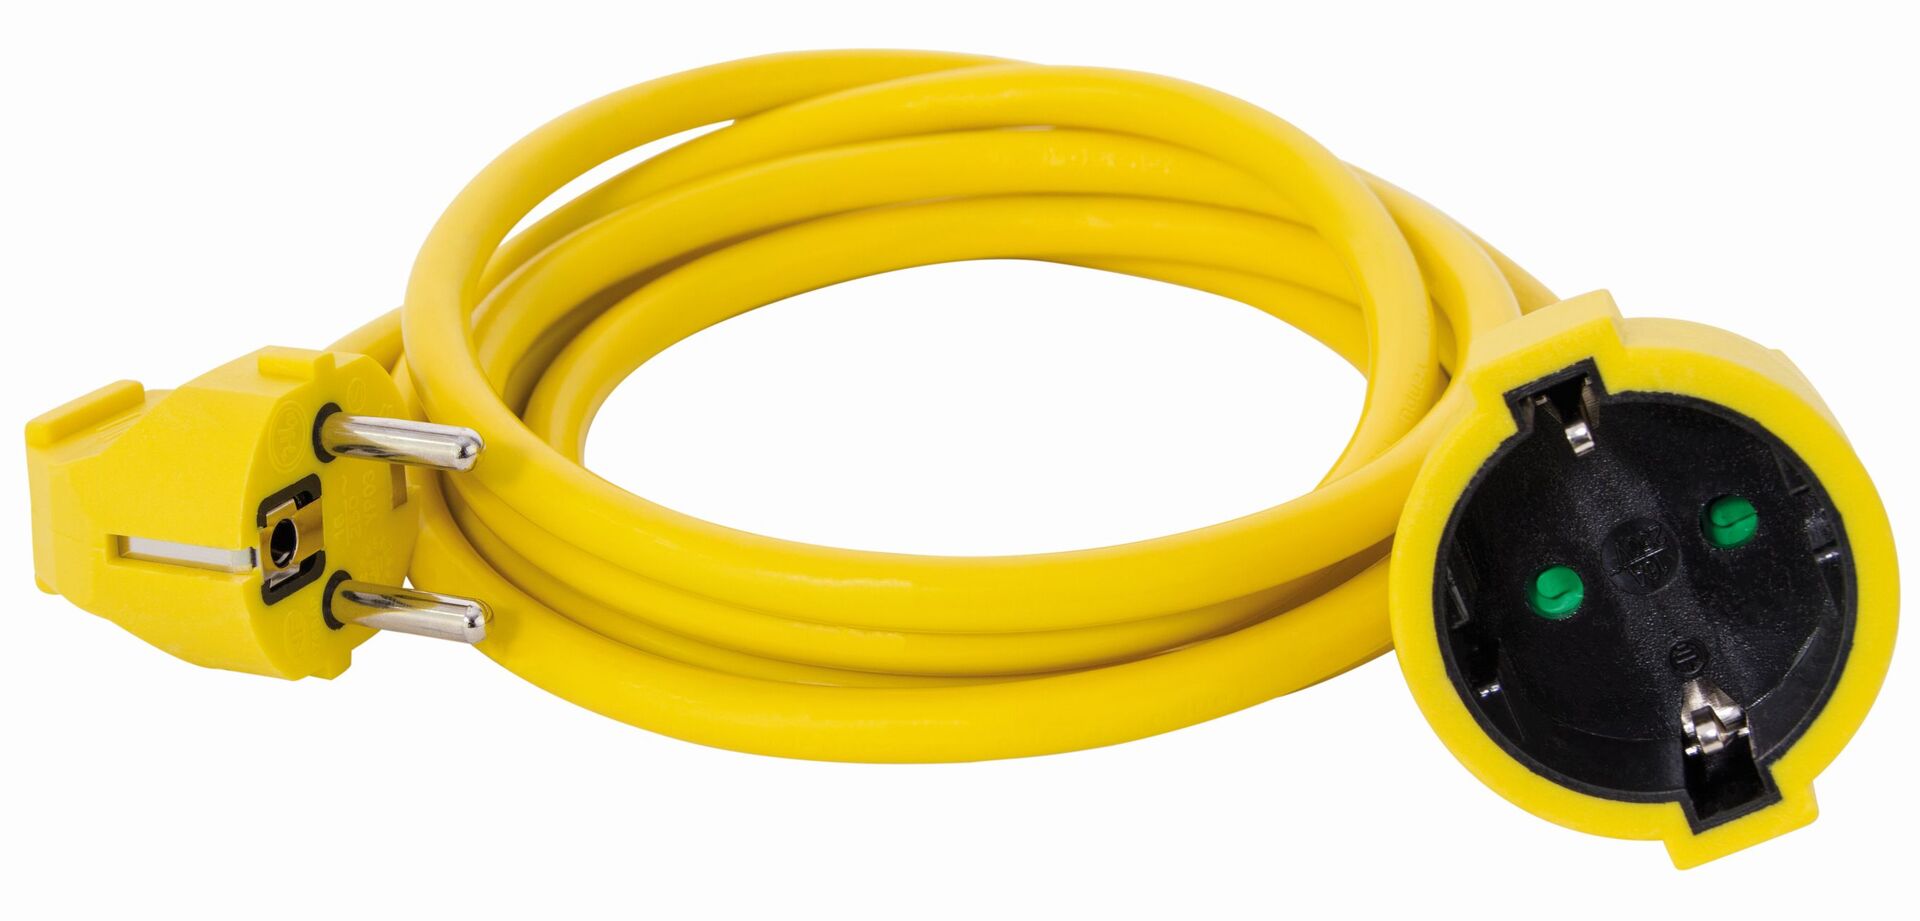 rev ritter schutzkontakt verlÃ¤ngerung 10m gelb